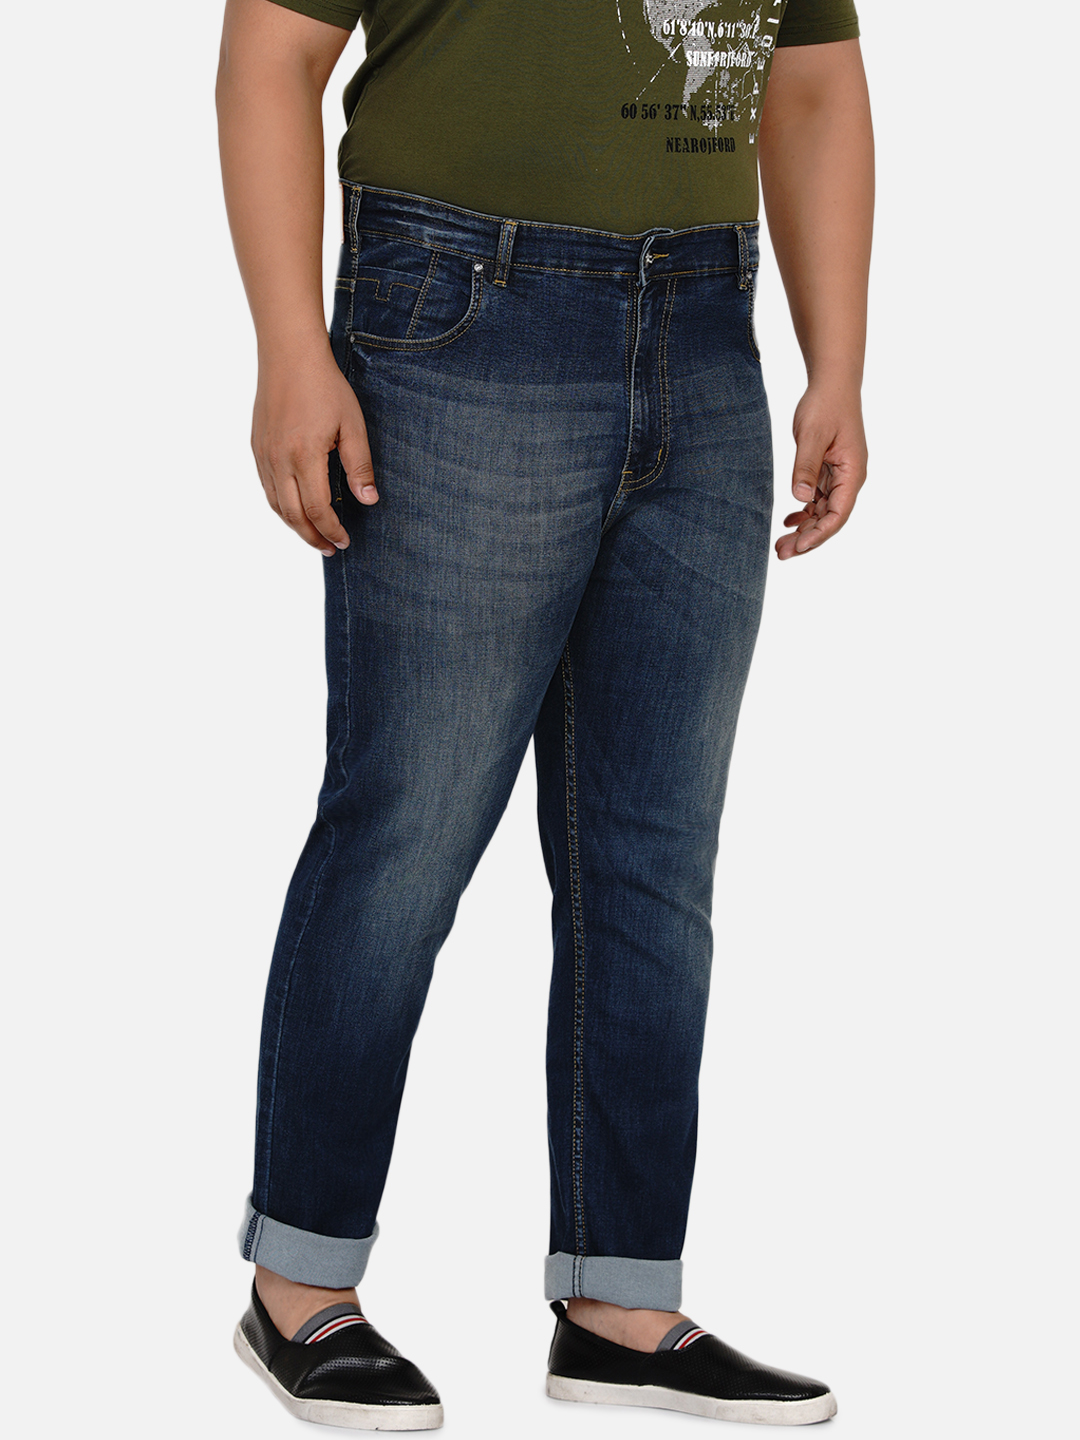 affordables/jeans/EJPJ2028/ejpj2028-4.jpg